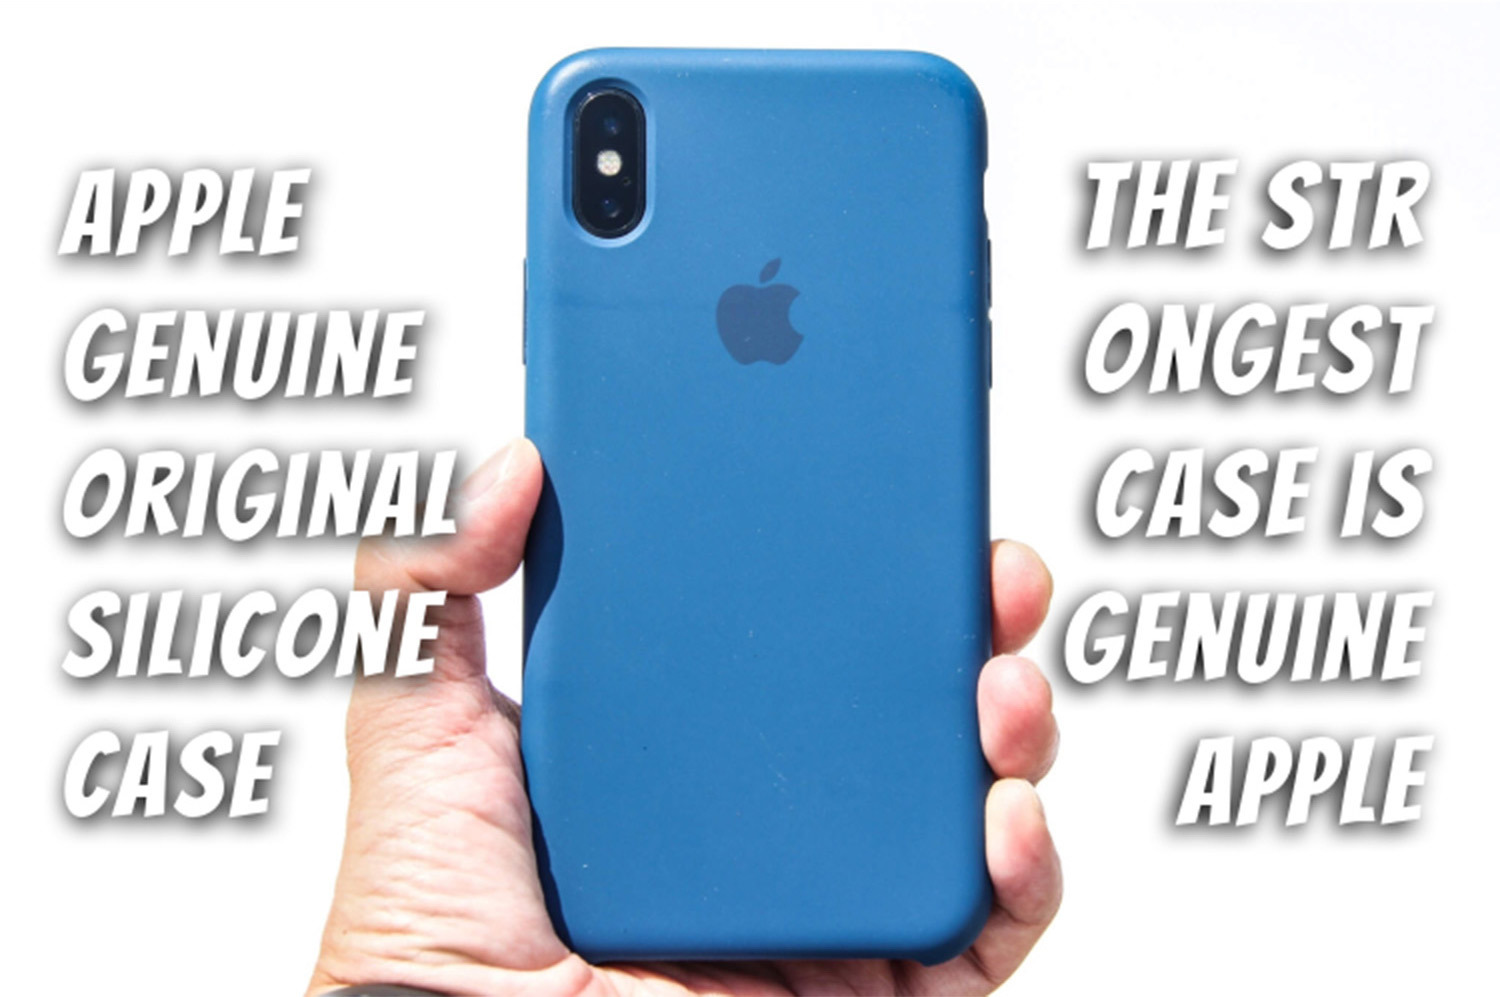 Apple genuine original silicone case